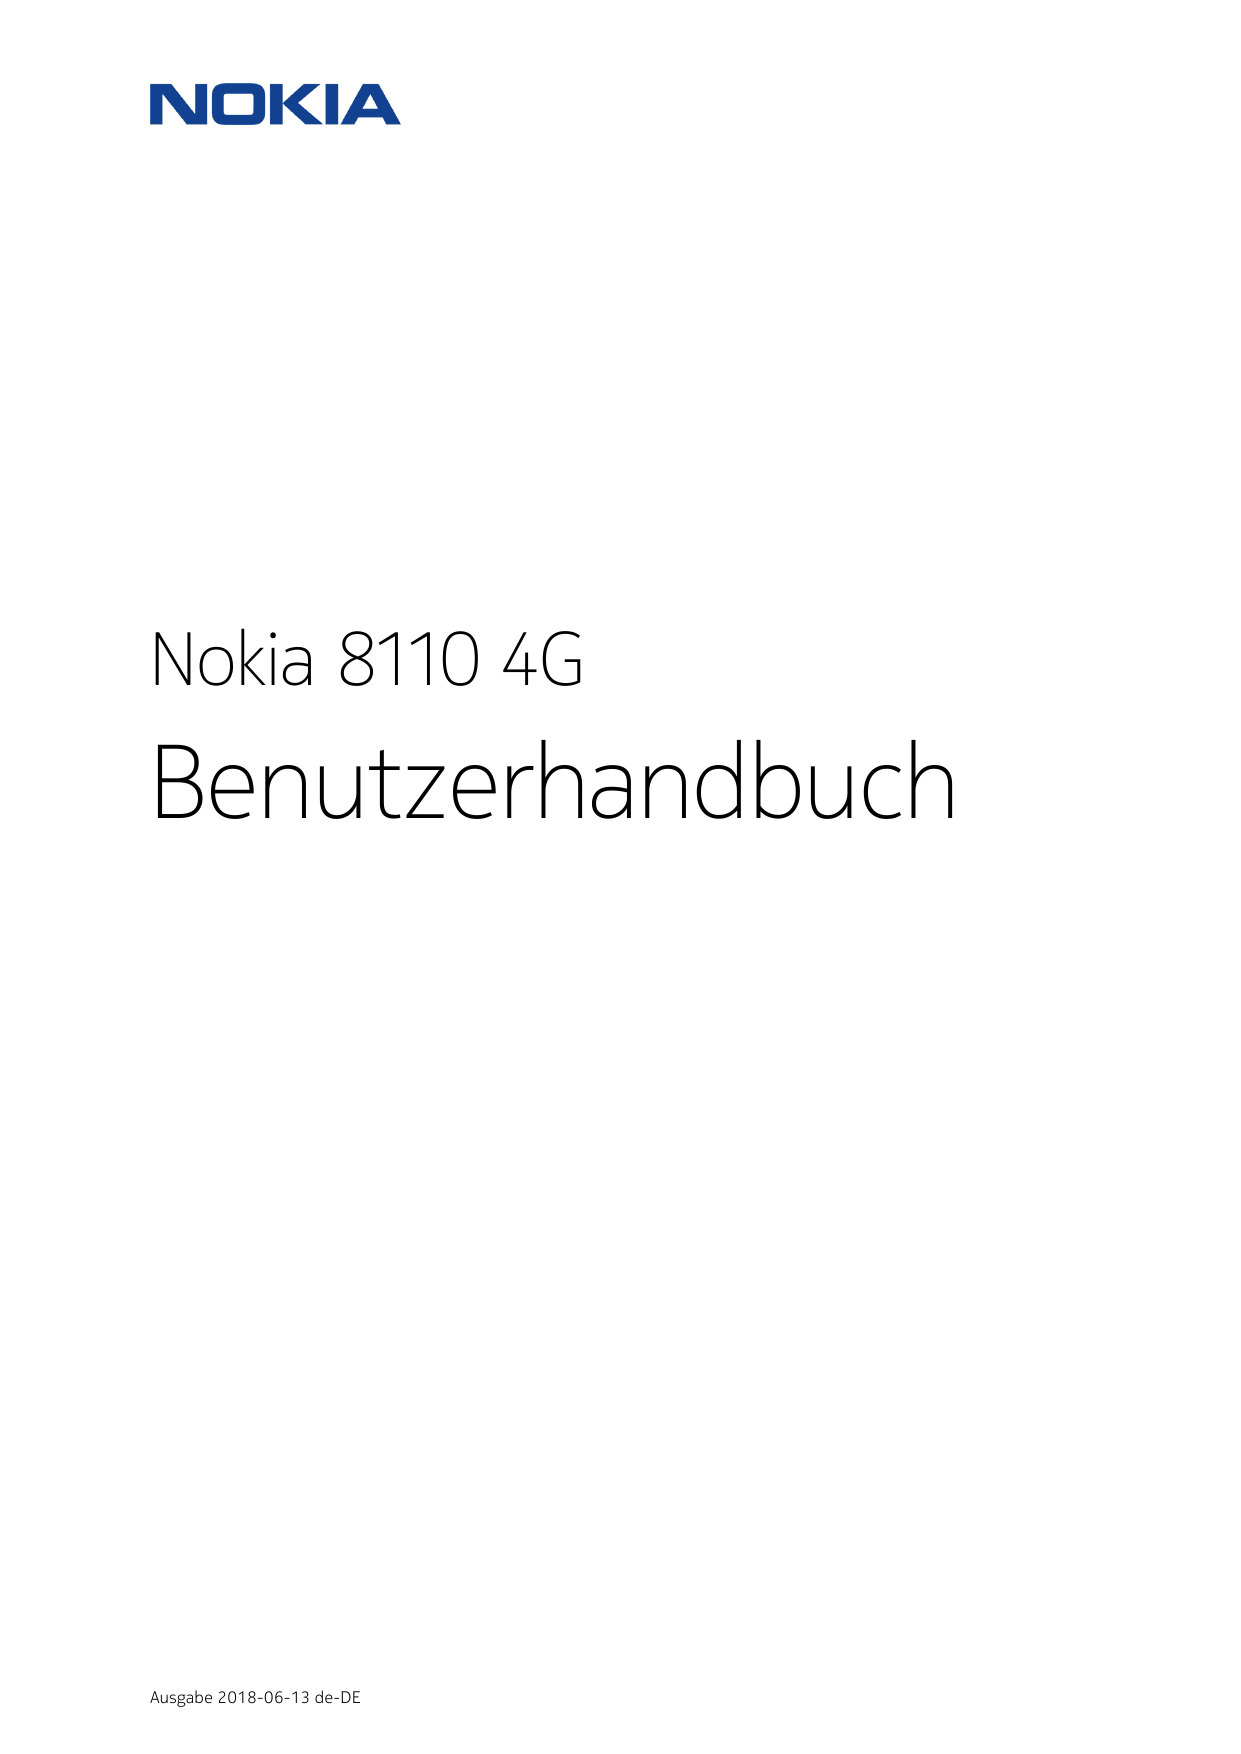 Nokia 8110 4GBenutzerhandbuchAusgabe 2018-06-13 de-DE